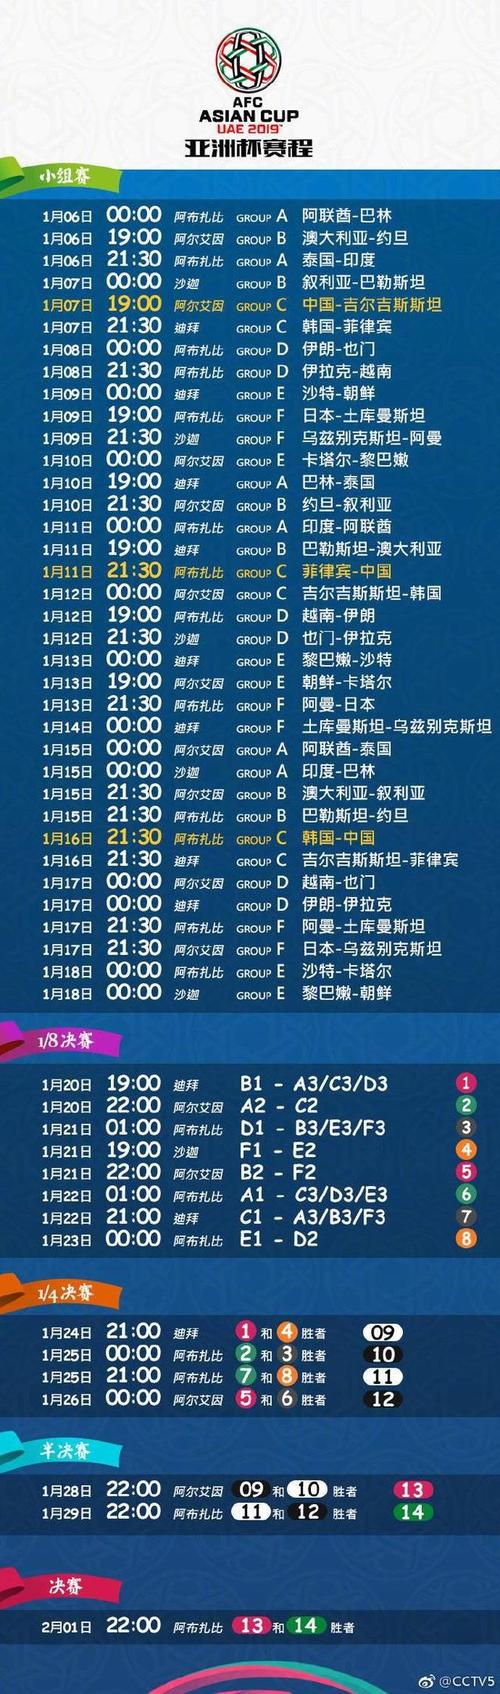 u22亚洲杯赛程时间表